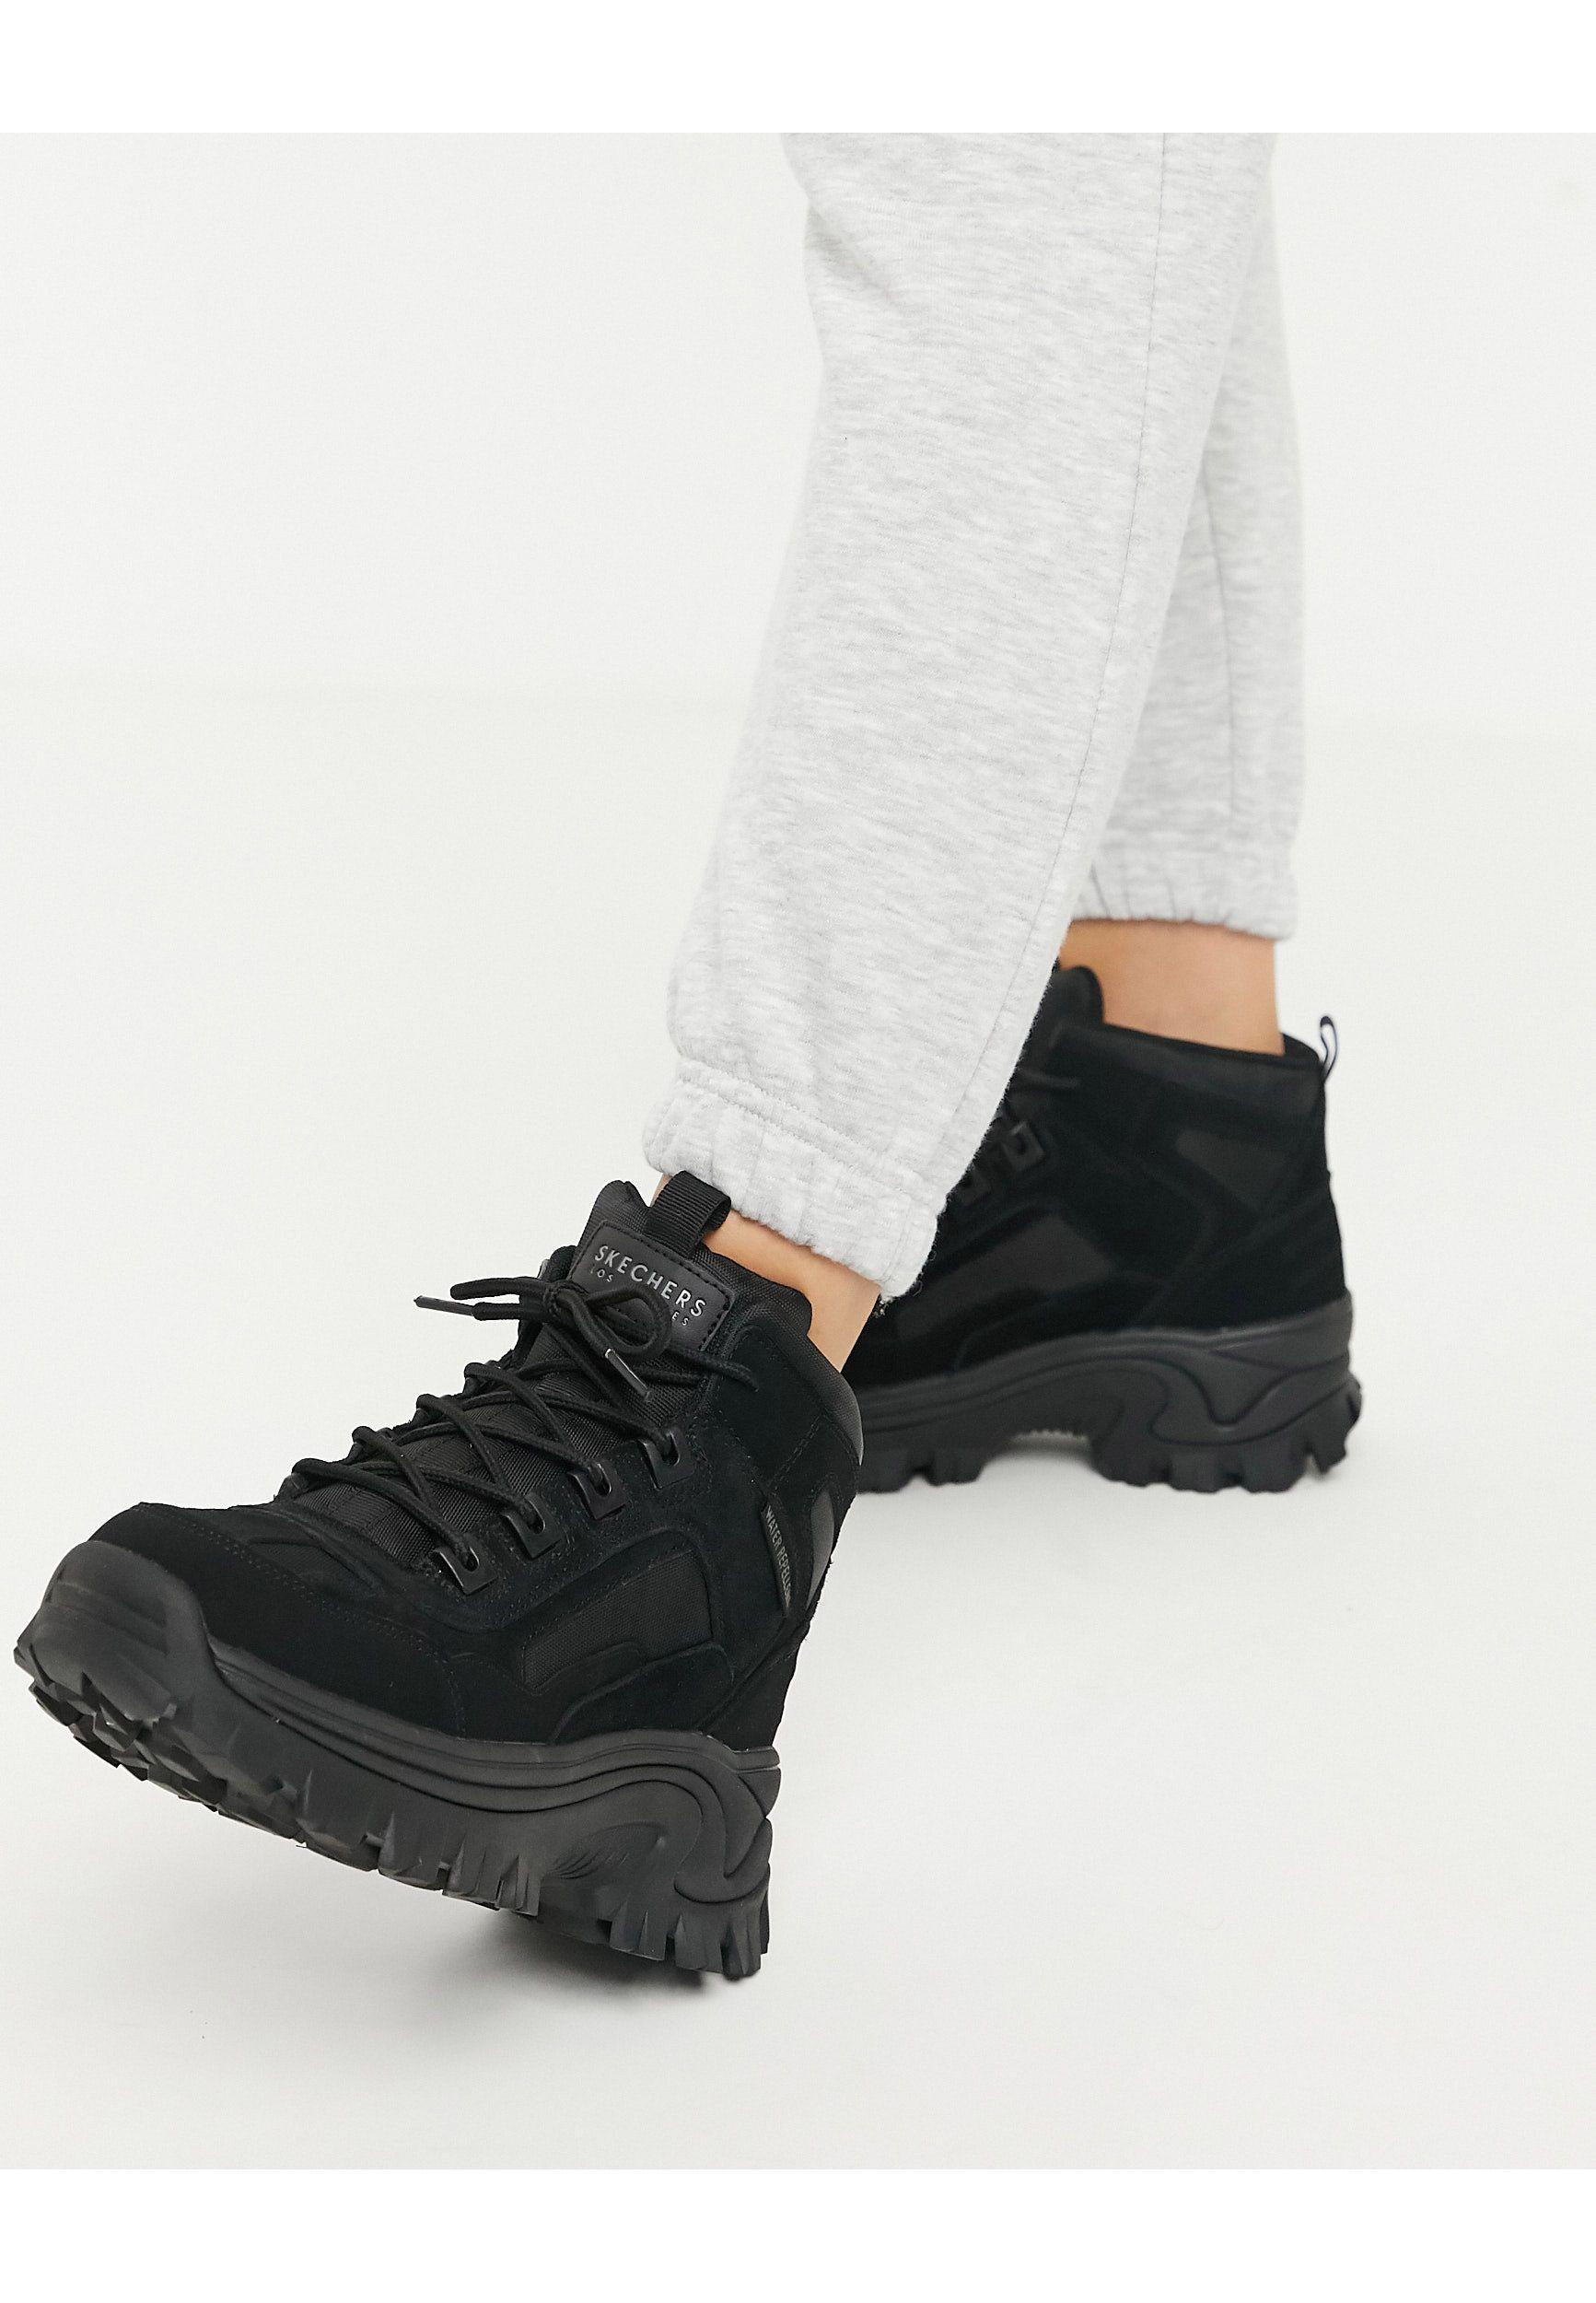 Skechers Street Blox Flat Ankle Hiker Boots in Black | Lyst UK